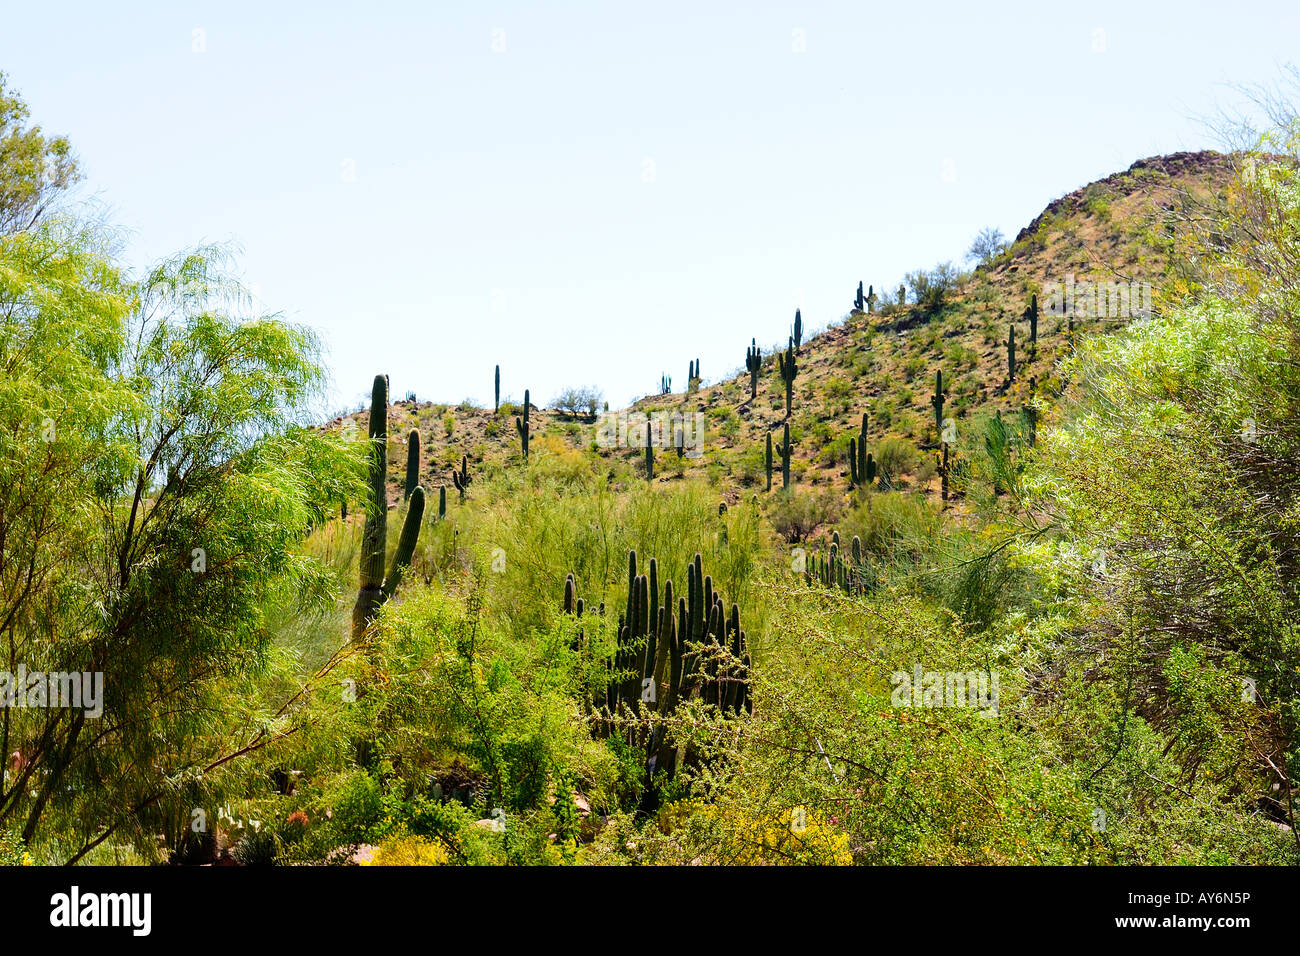 Saguaro Kaktus Am Hang In Desert Botanical Garden Sonora Wuste